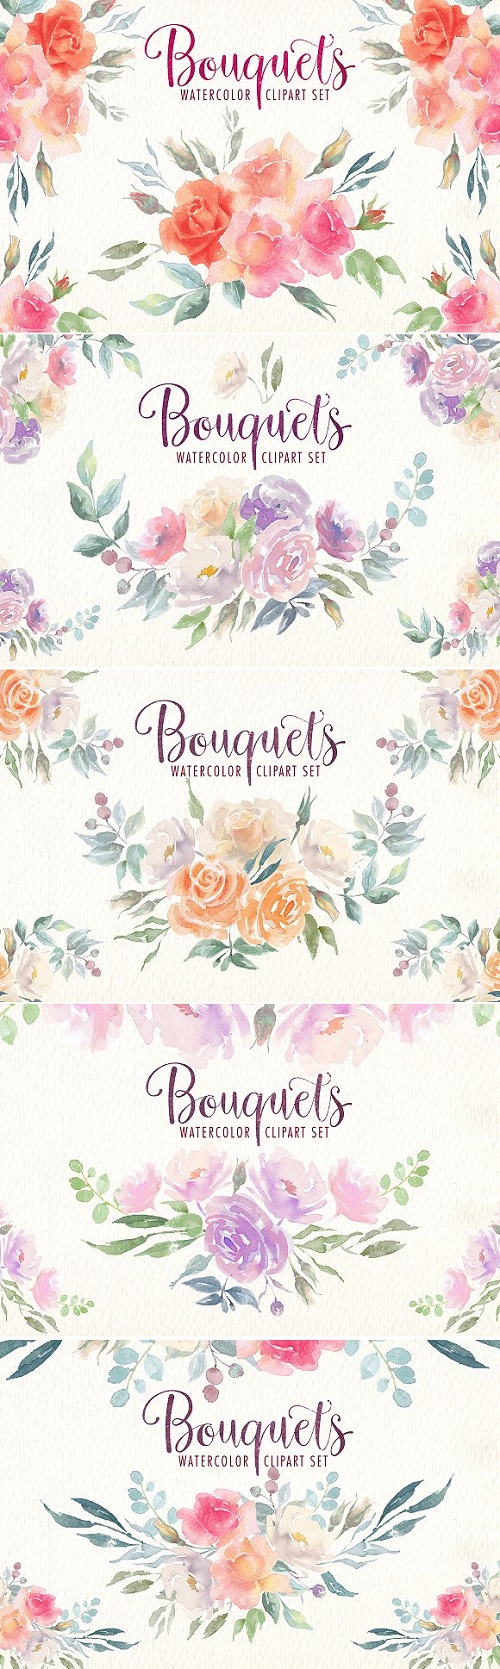 Watercolor bouquets clipart set 1847684